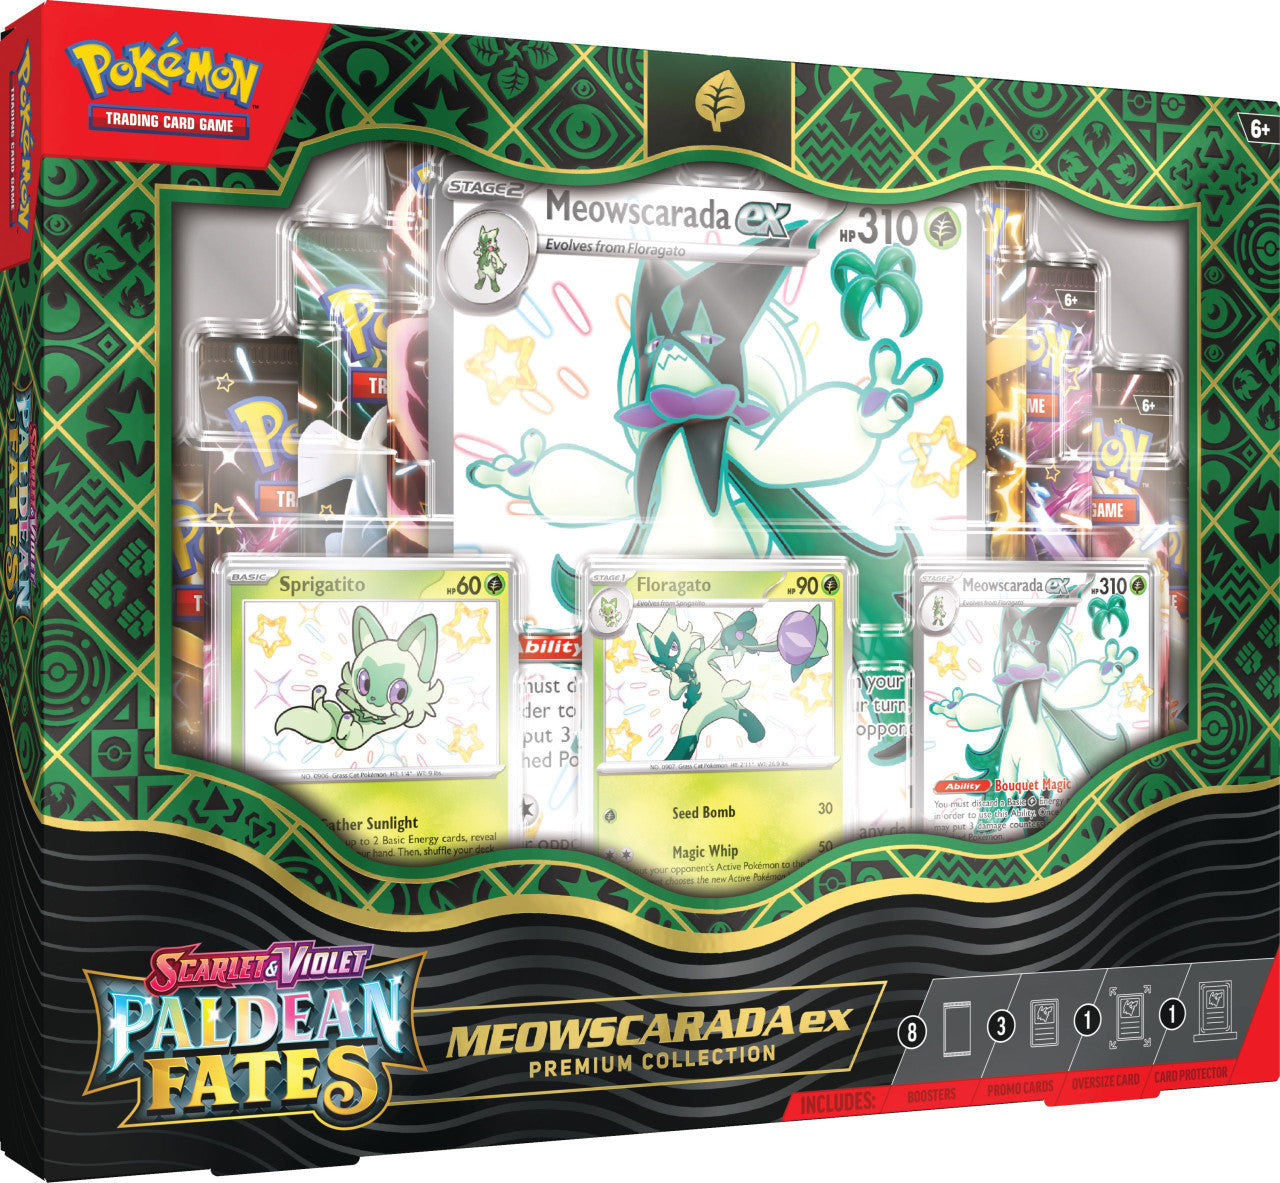 Pokémon Paldean Fates Premium Collection Meowscarada ex